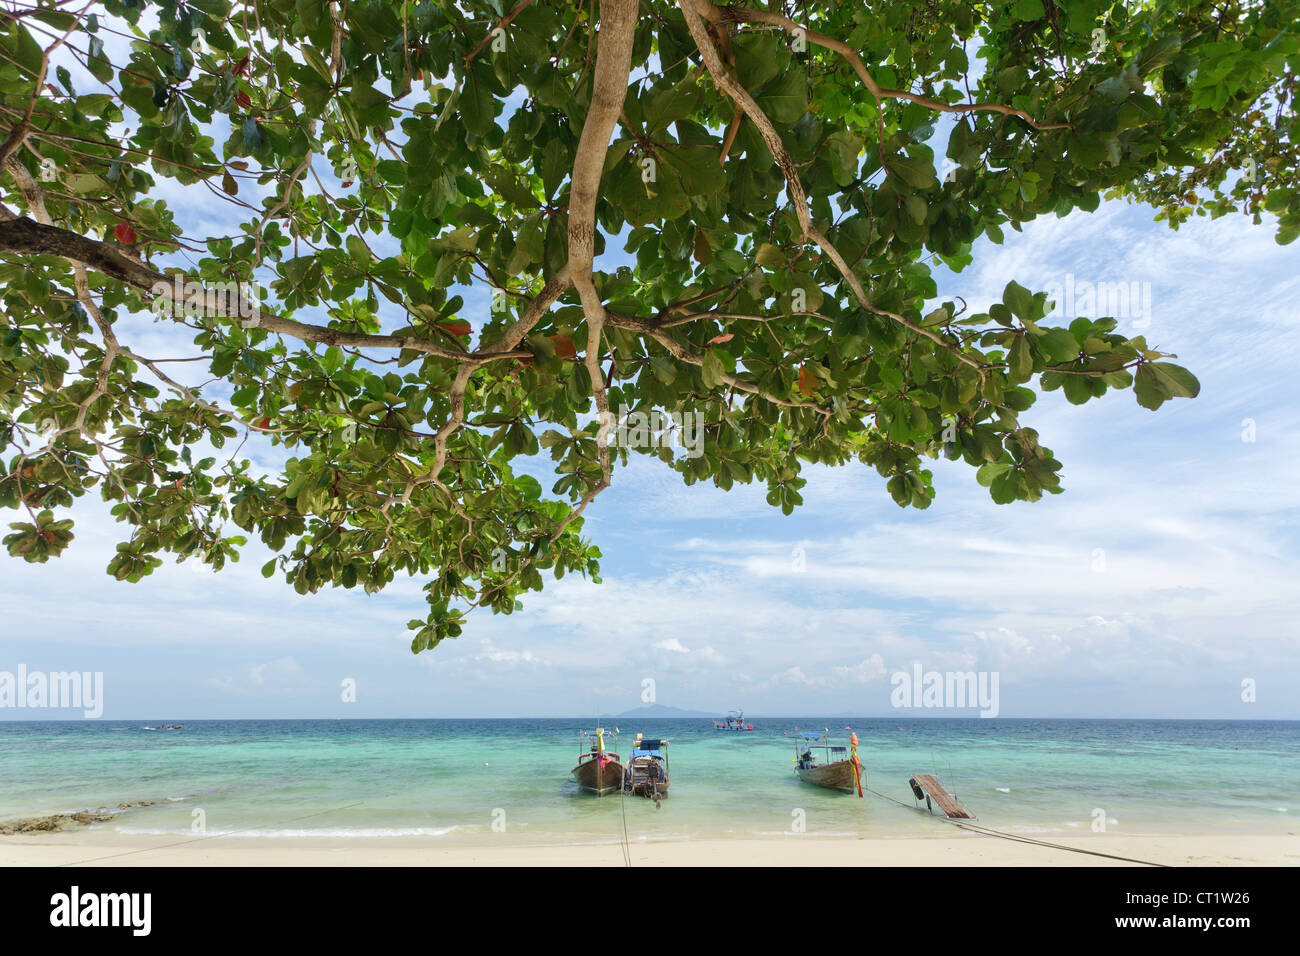 Rantee bay beach with almond tree Terminalia catappa and long tail boats, ko phi phi, Thailand Stock Photo